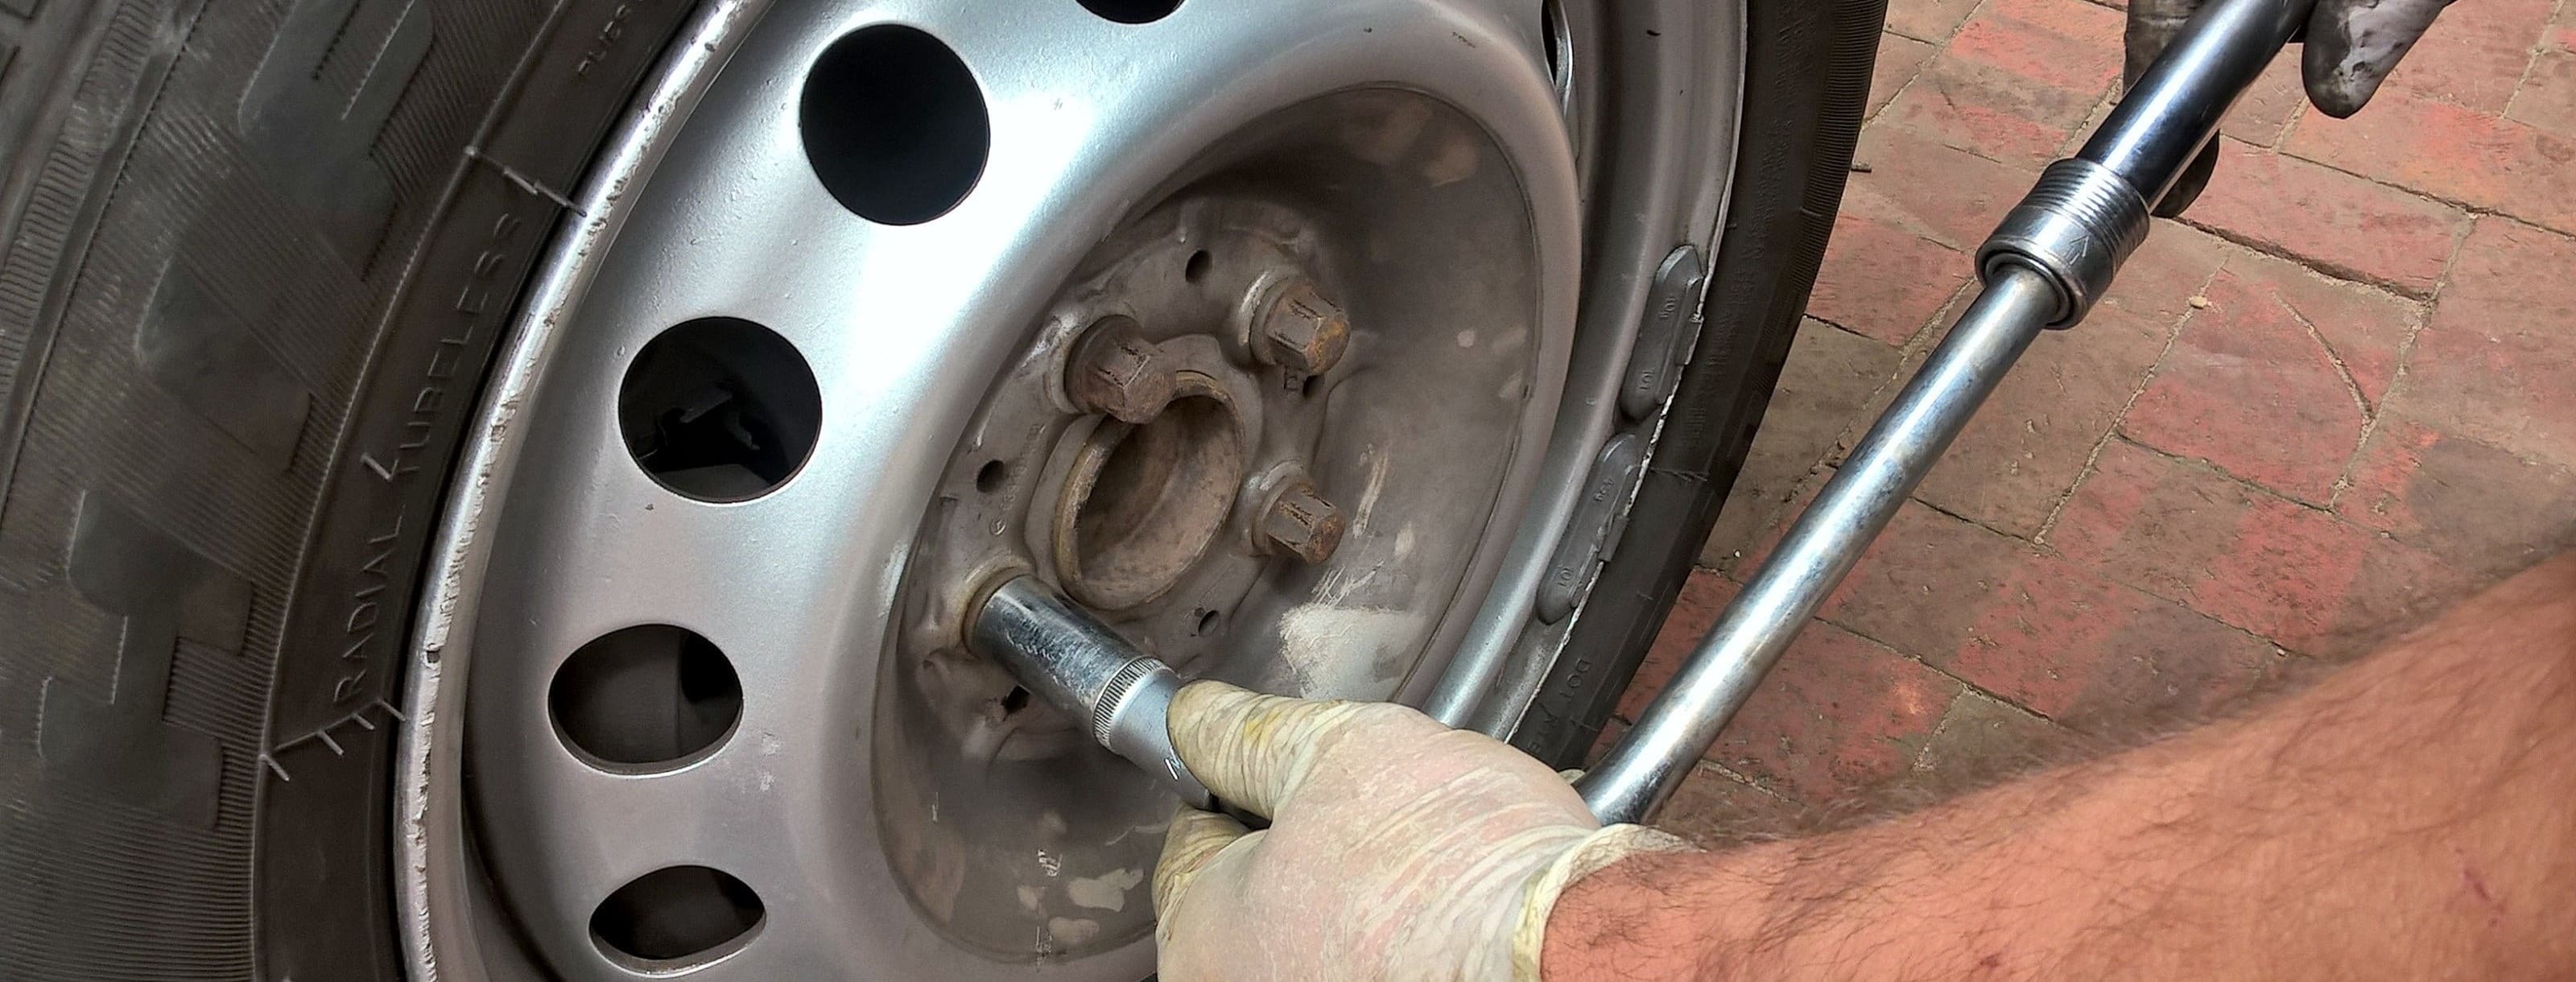 Как заменить пробитое колесо в автомобиле во время путешествия